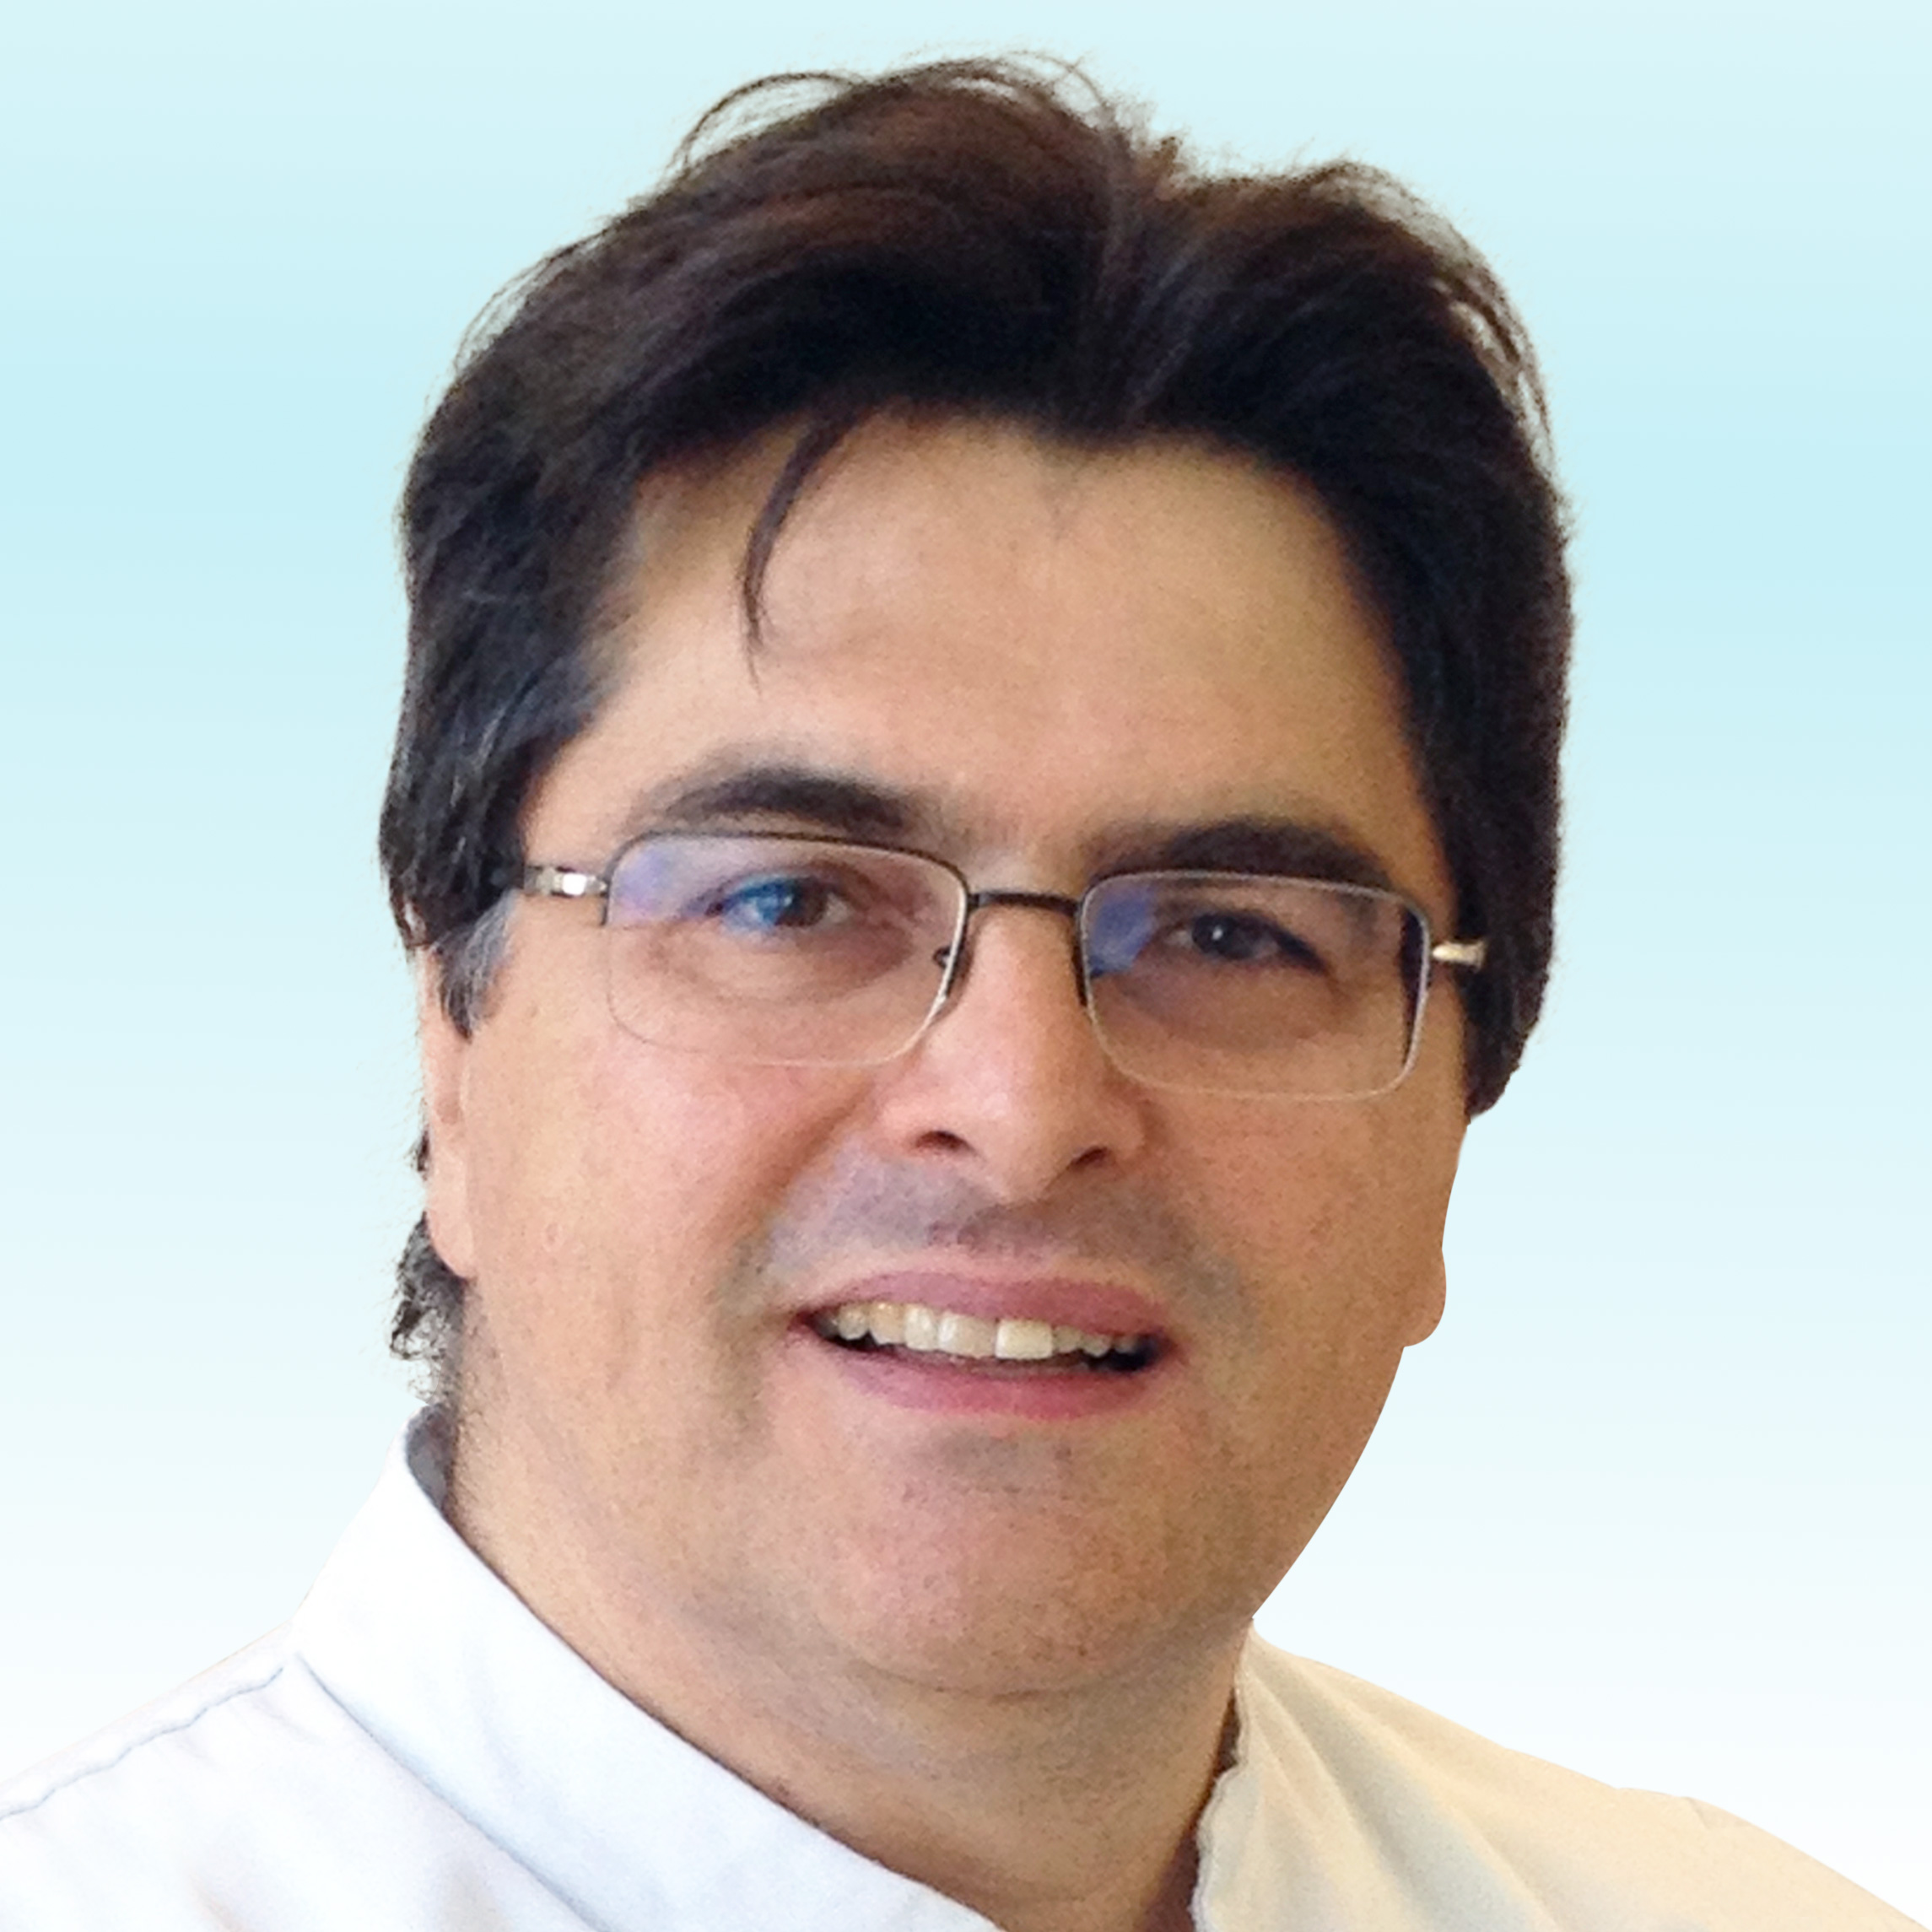 Dermatologist, Dr. Carlo Mainetti